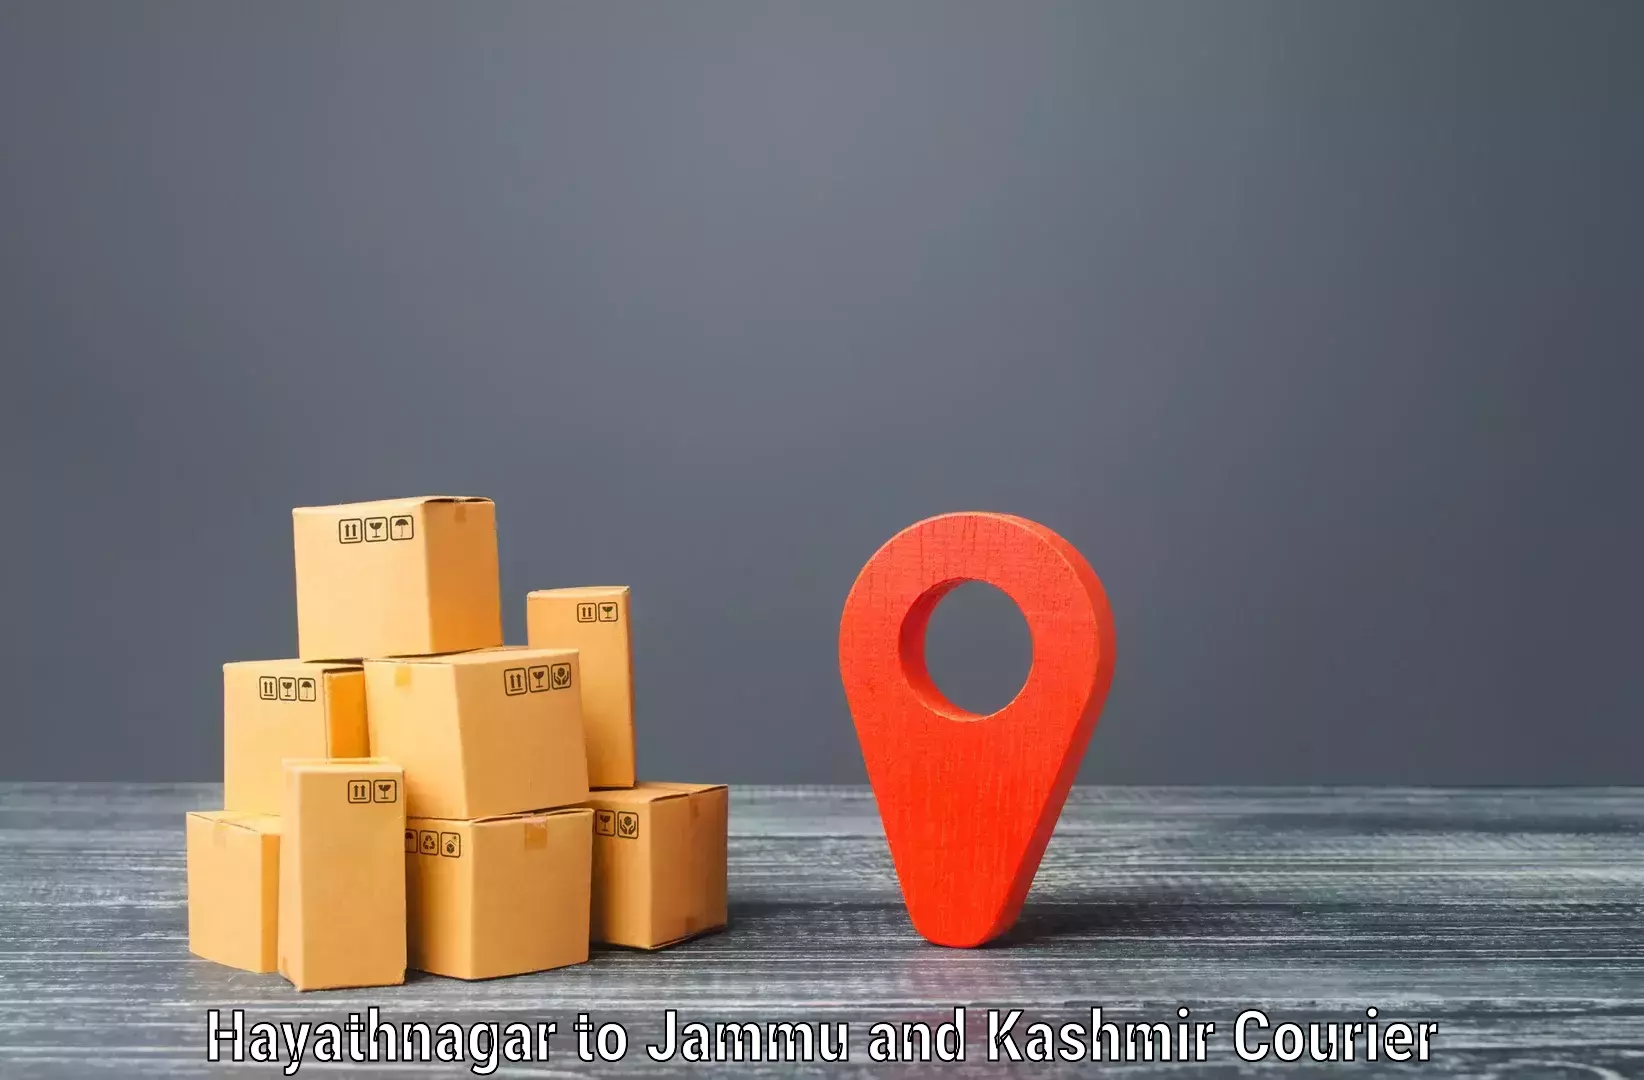 Flexible delivery schedules Hayathnagar to Kishtwar